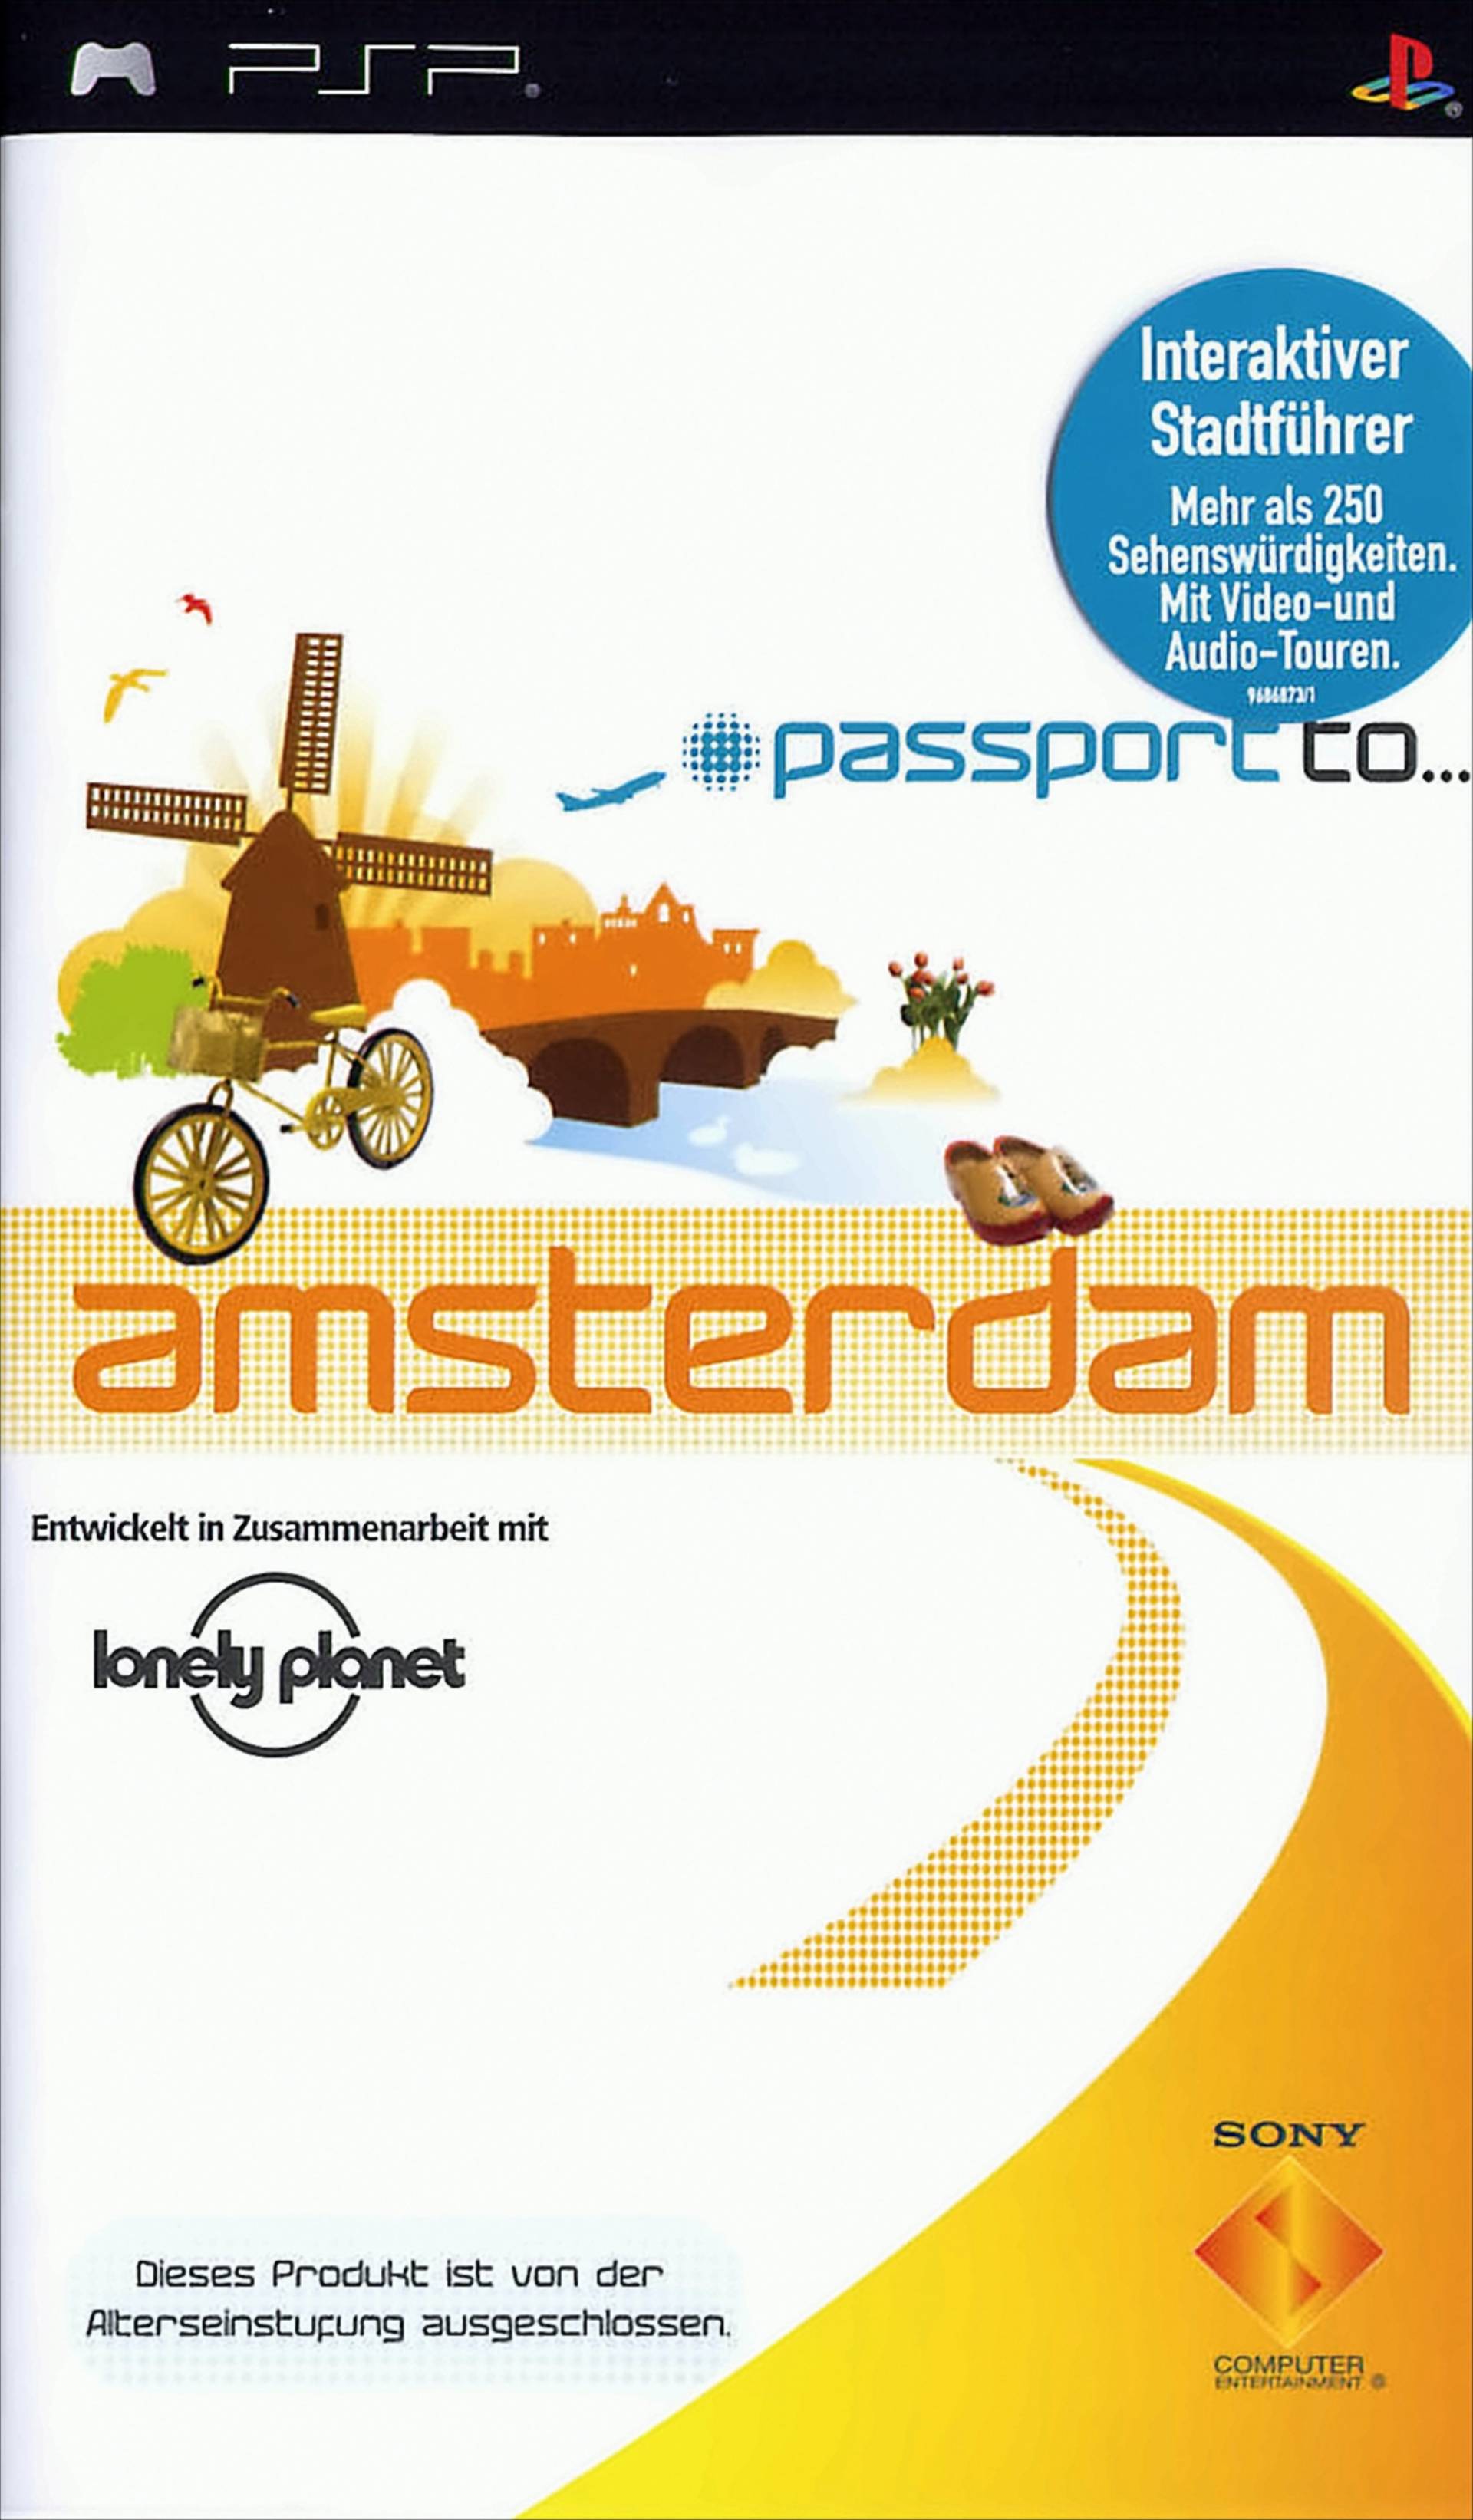 Passport to... Amsterdam von Sony Computer Entertainment